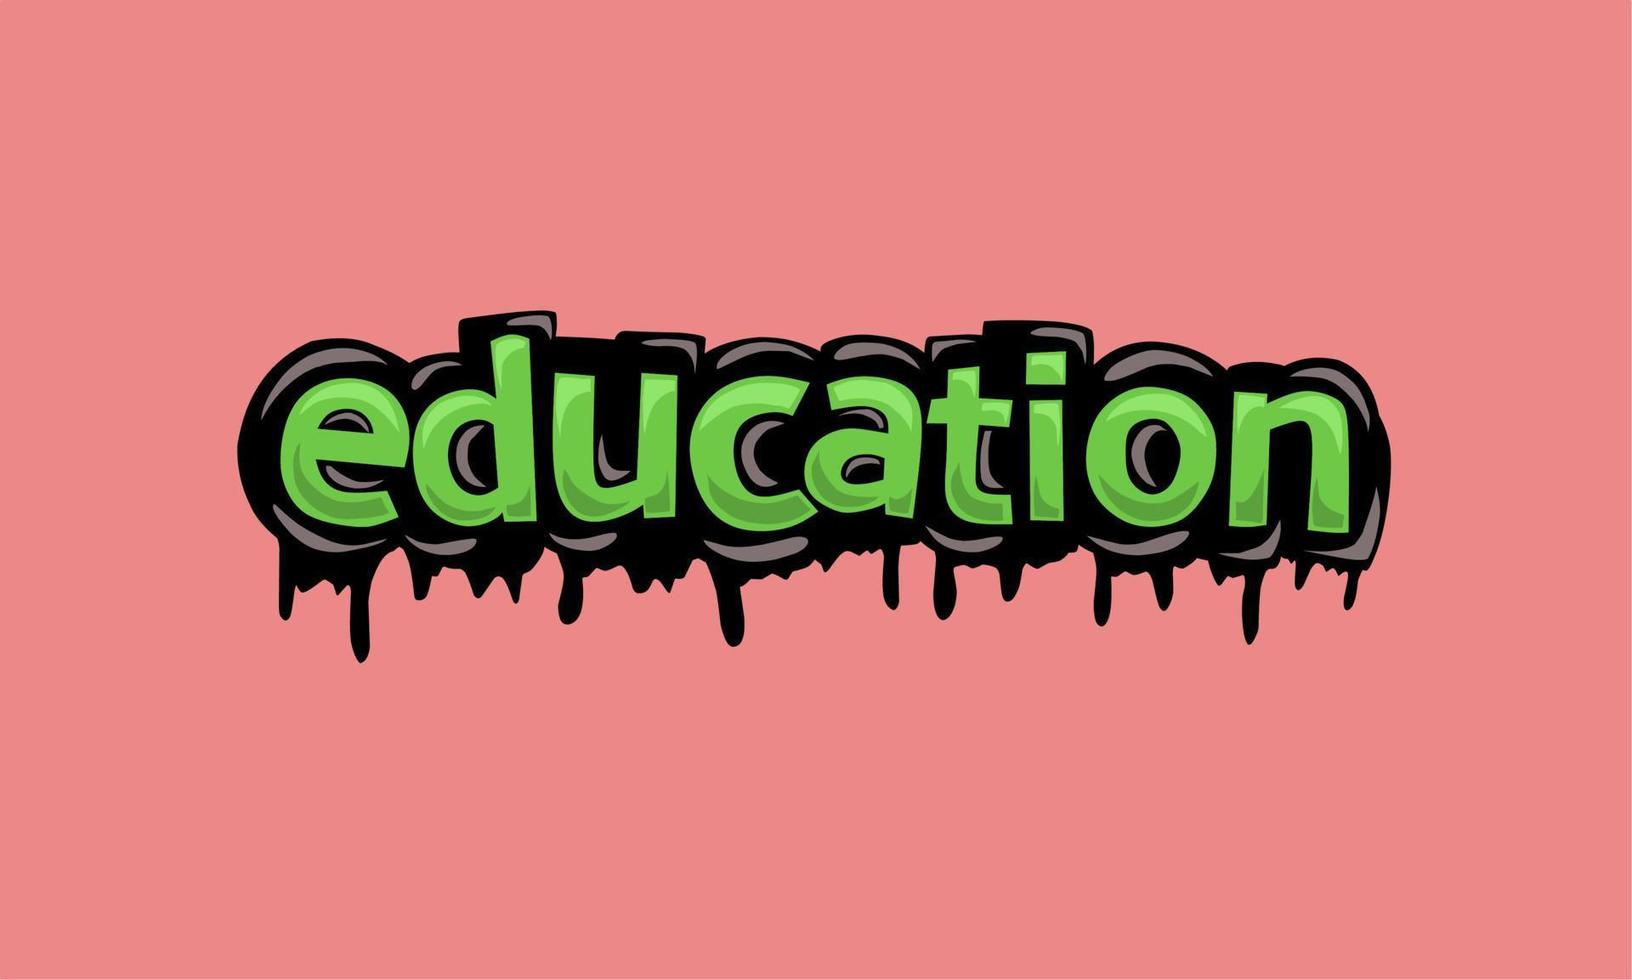 onderwijs schrijven vector ontwerp op roze background